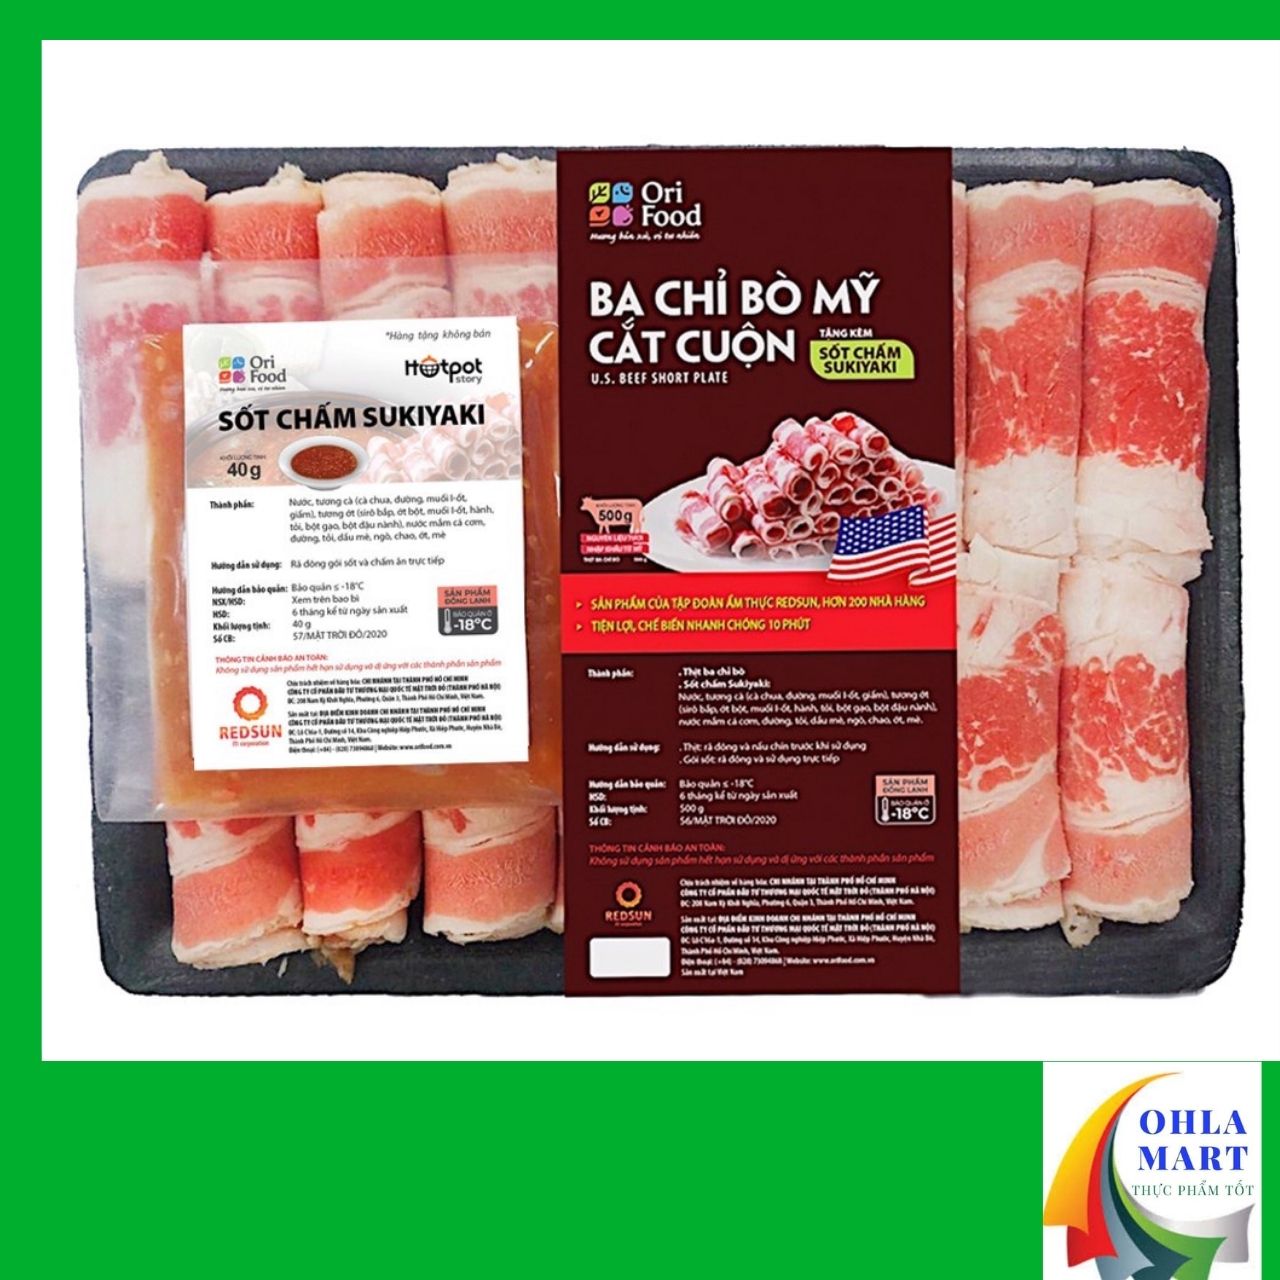 Thịt Ba Chỉ Bò Mỹ Orifood cuộn sốt chấm Sukiyaki 540g Ohla mart Chế Biến